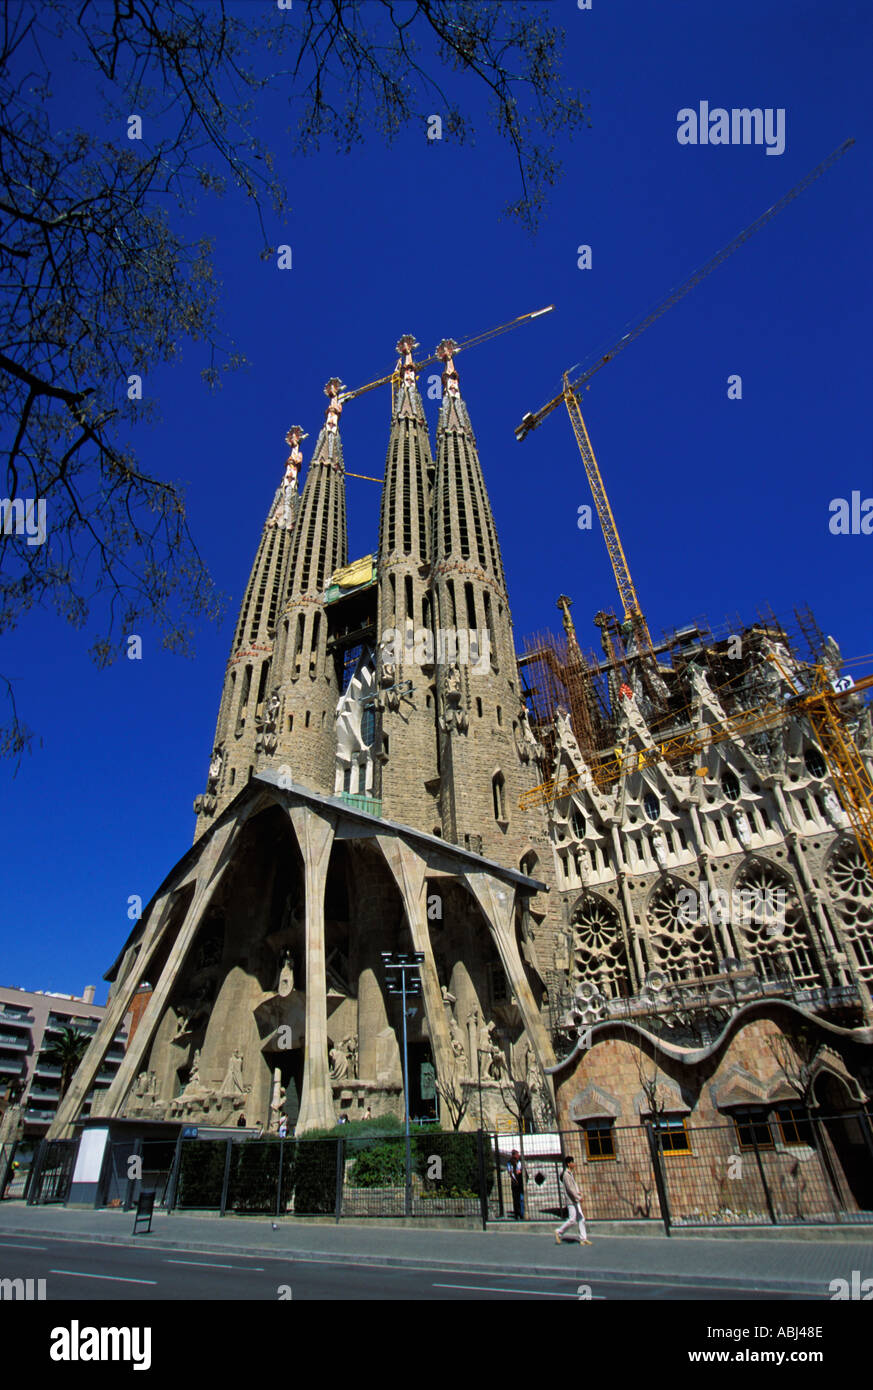 Barcellona, Sagrada Familia chiesa in costruzione. Data di scatto aprile 2004 Foto Stock